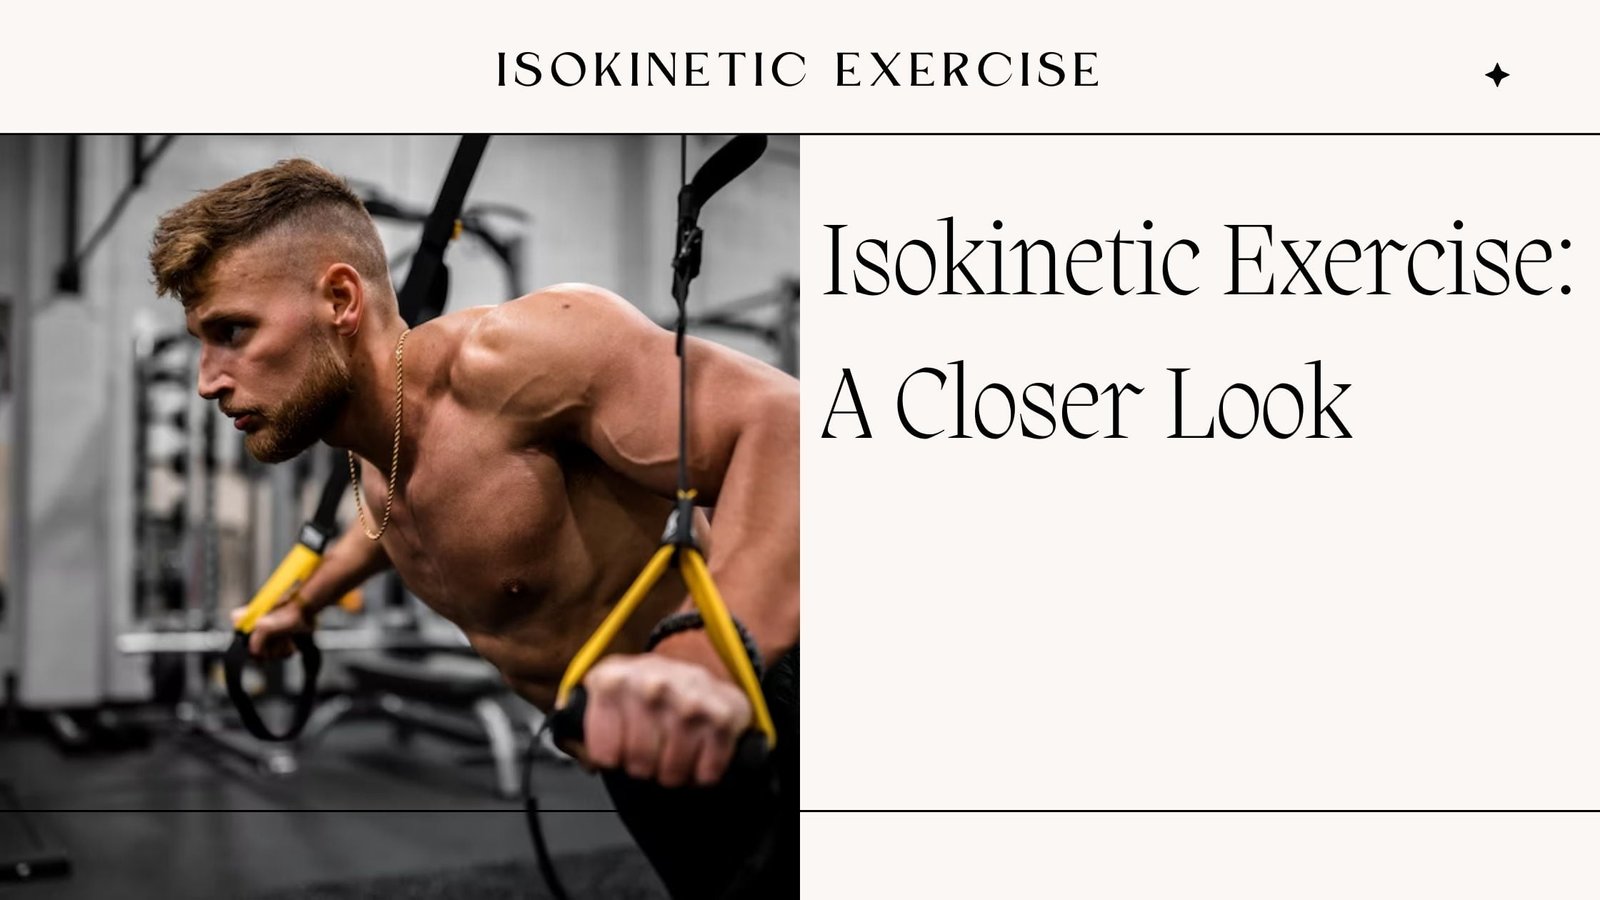 Isokinetic exercise